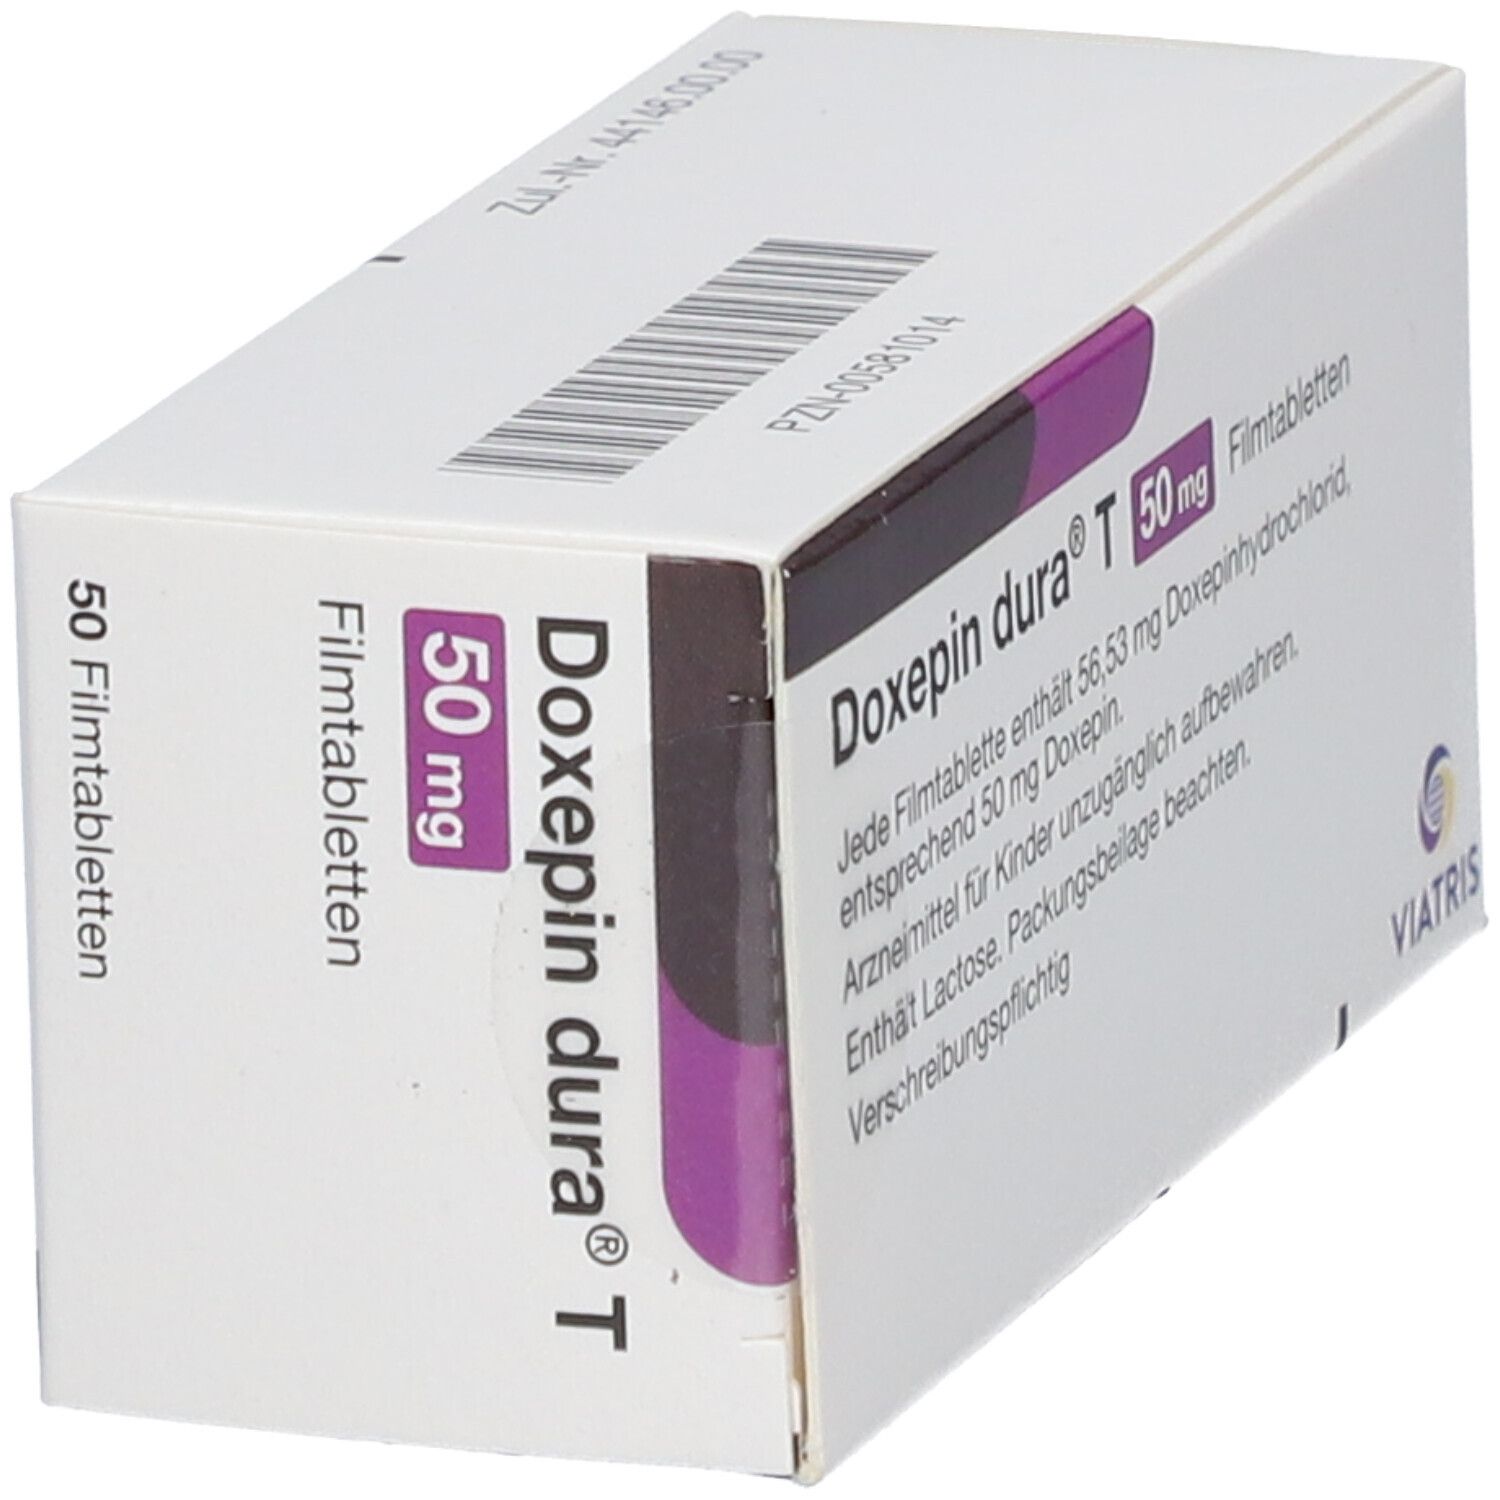 Doxepin dura® T 50 mg